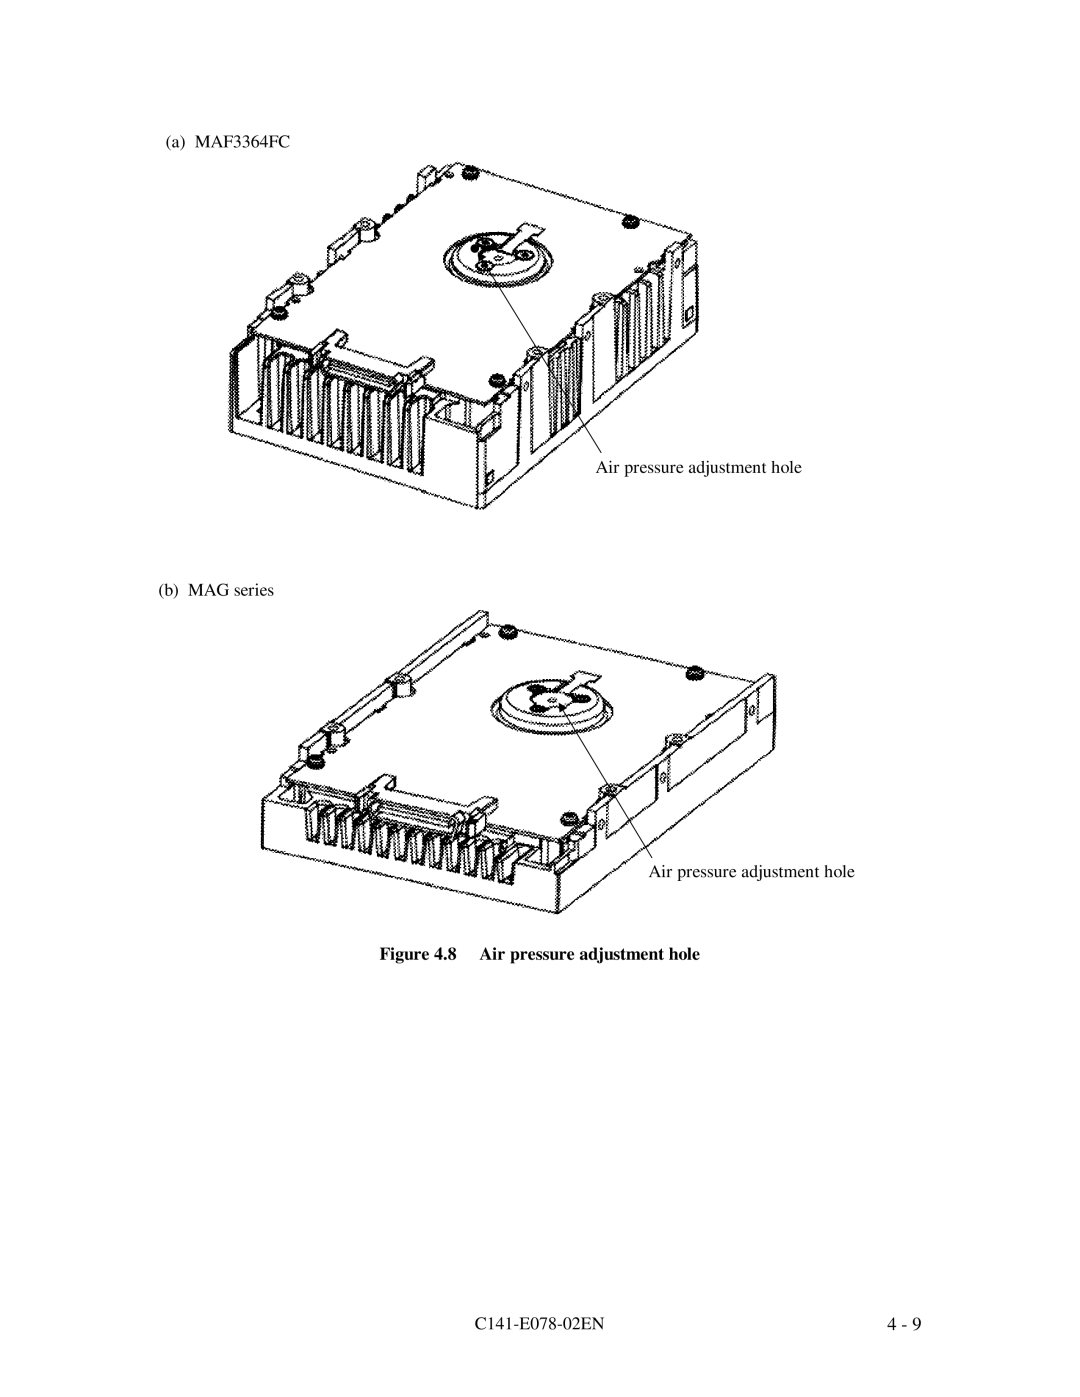 Fujitsu MAG3182FC 8 Air pressure adjustment hole, a MAF3364FC Air pressure adjustment hole b MAG series, C141-E078-02EN 